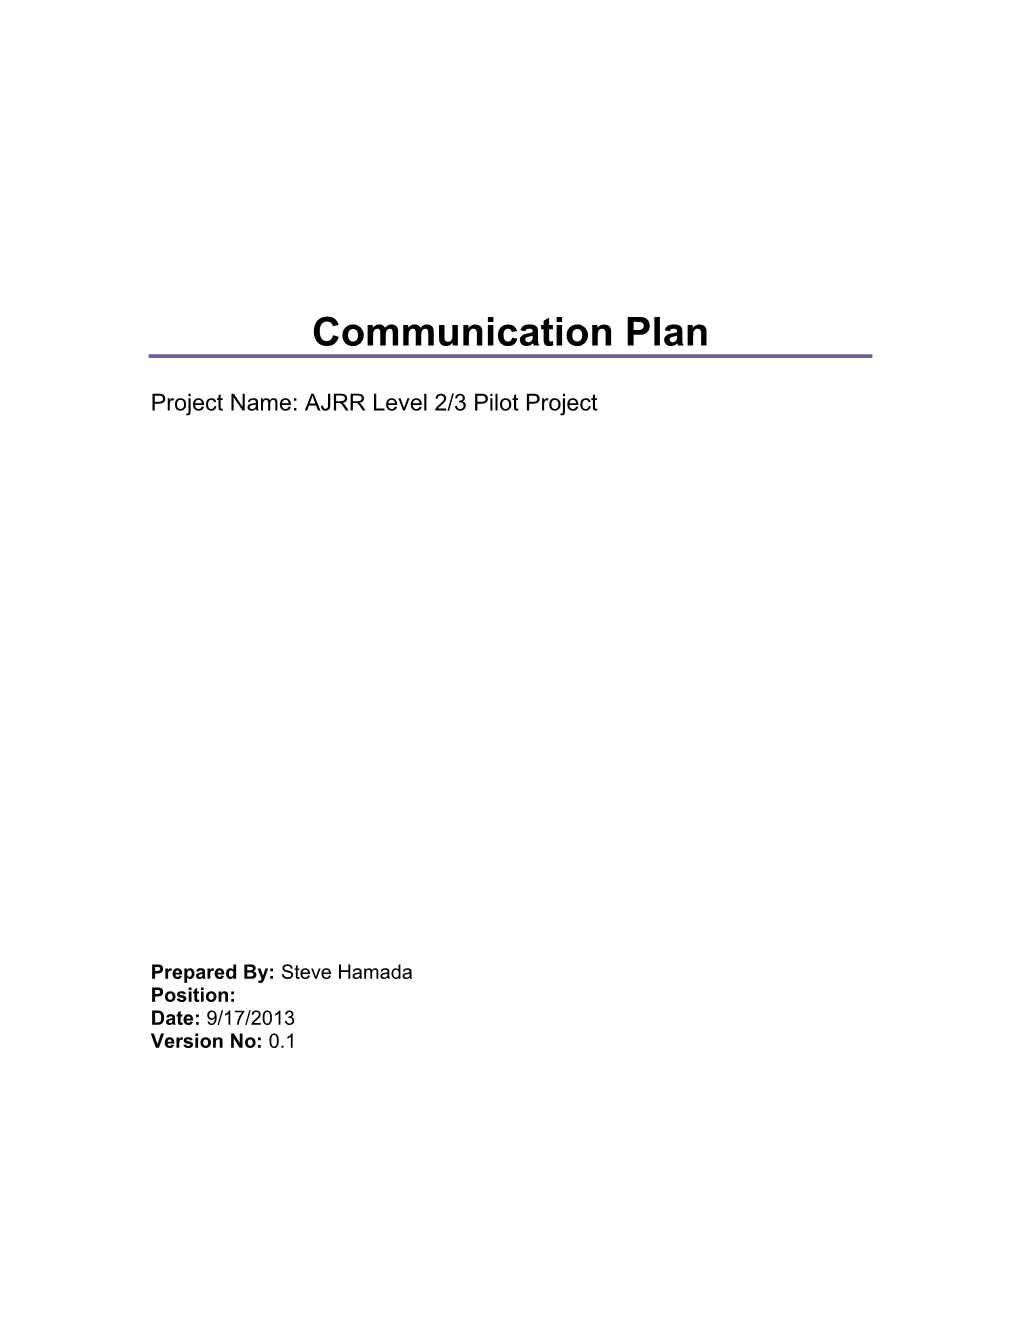 AJRR Level 2/3 Pilot Project Communication Plan